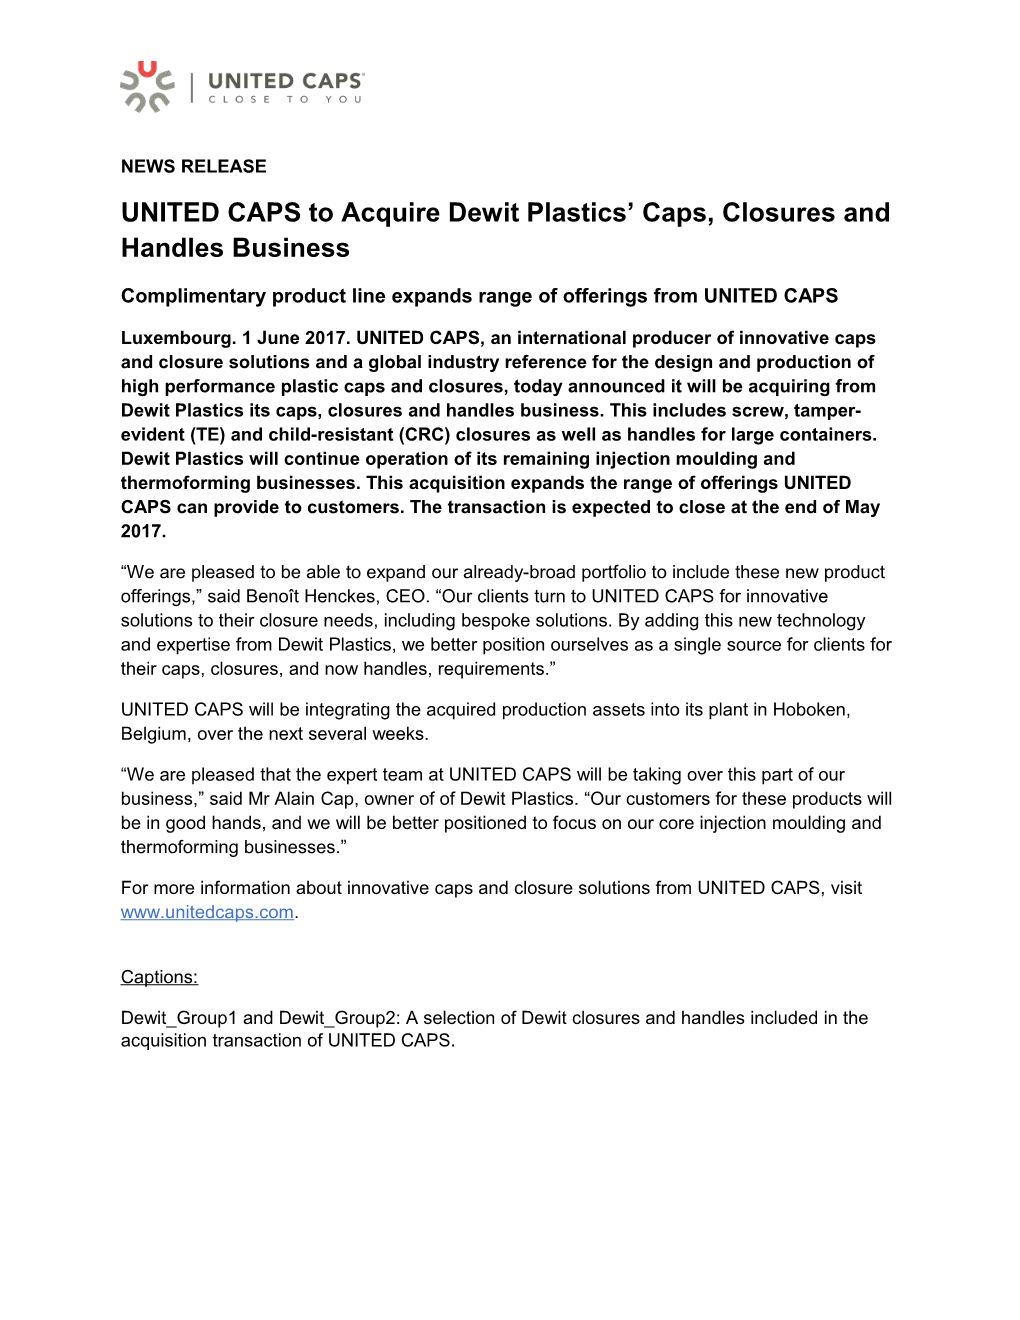 UNITED CAPS to Acquire Dewit Plastics Caps, Closures and Handles Business